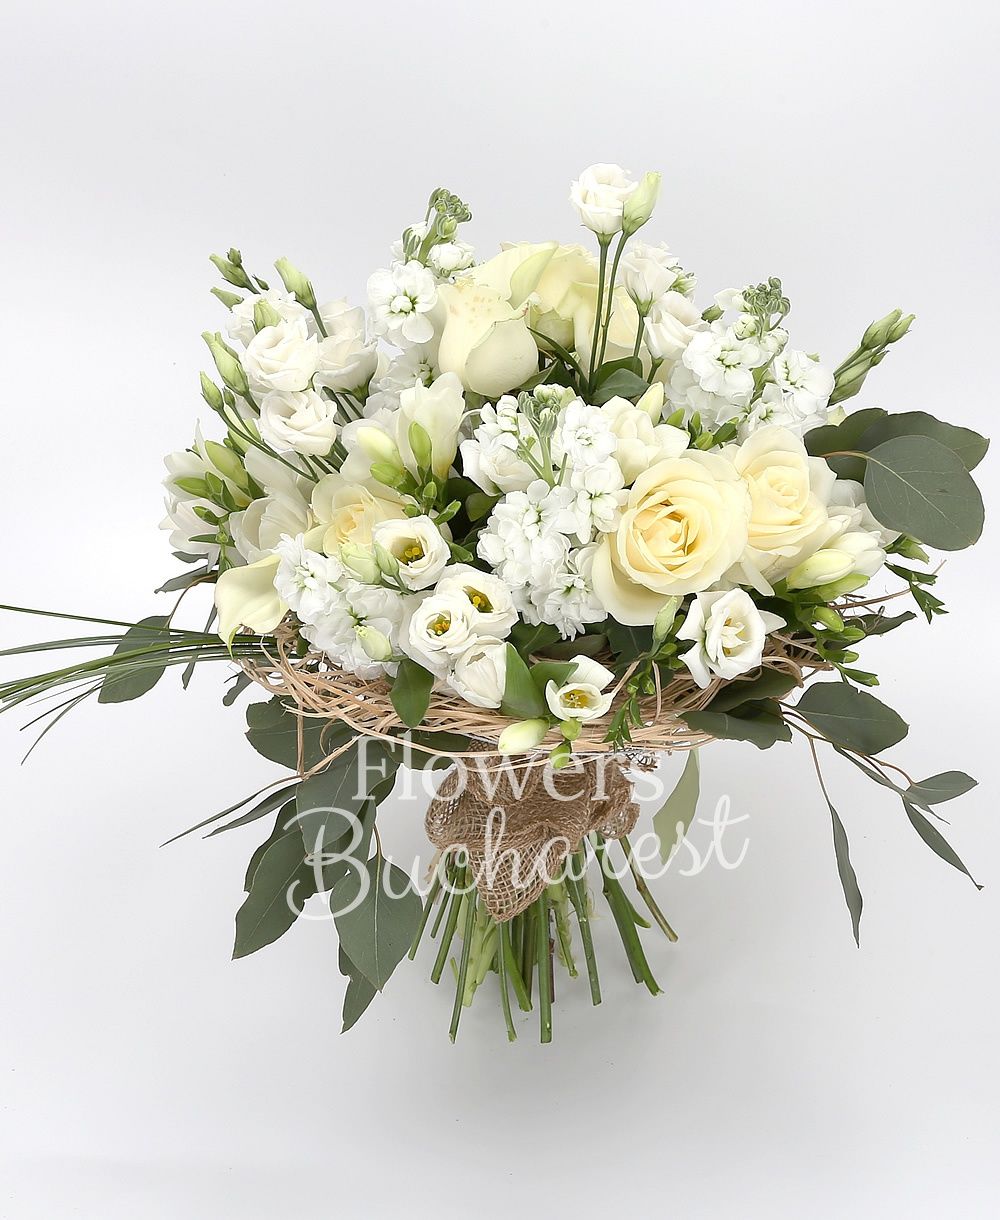 9 white roses, 5 white cala, 5 white mathiolla, 5 white lisianthus, 10 white freesias, 10 white tulips, greenery